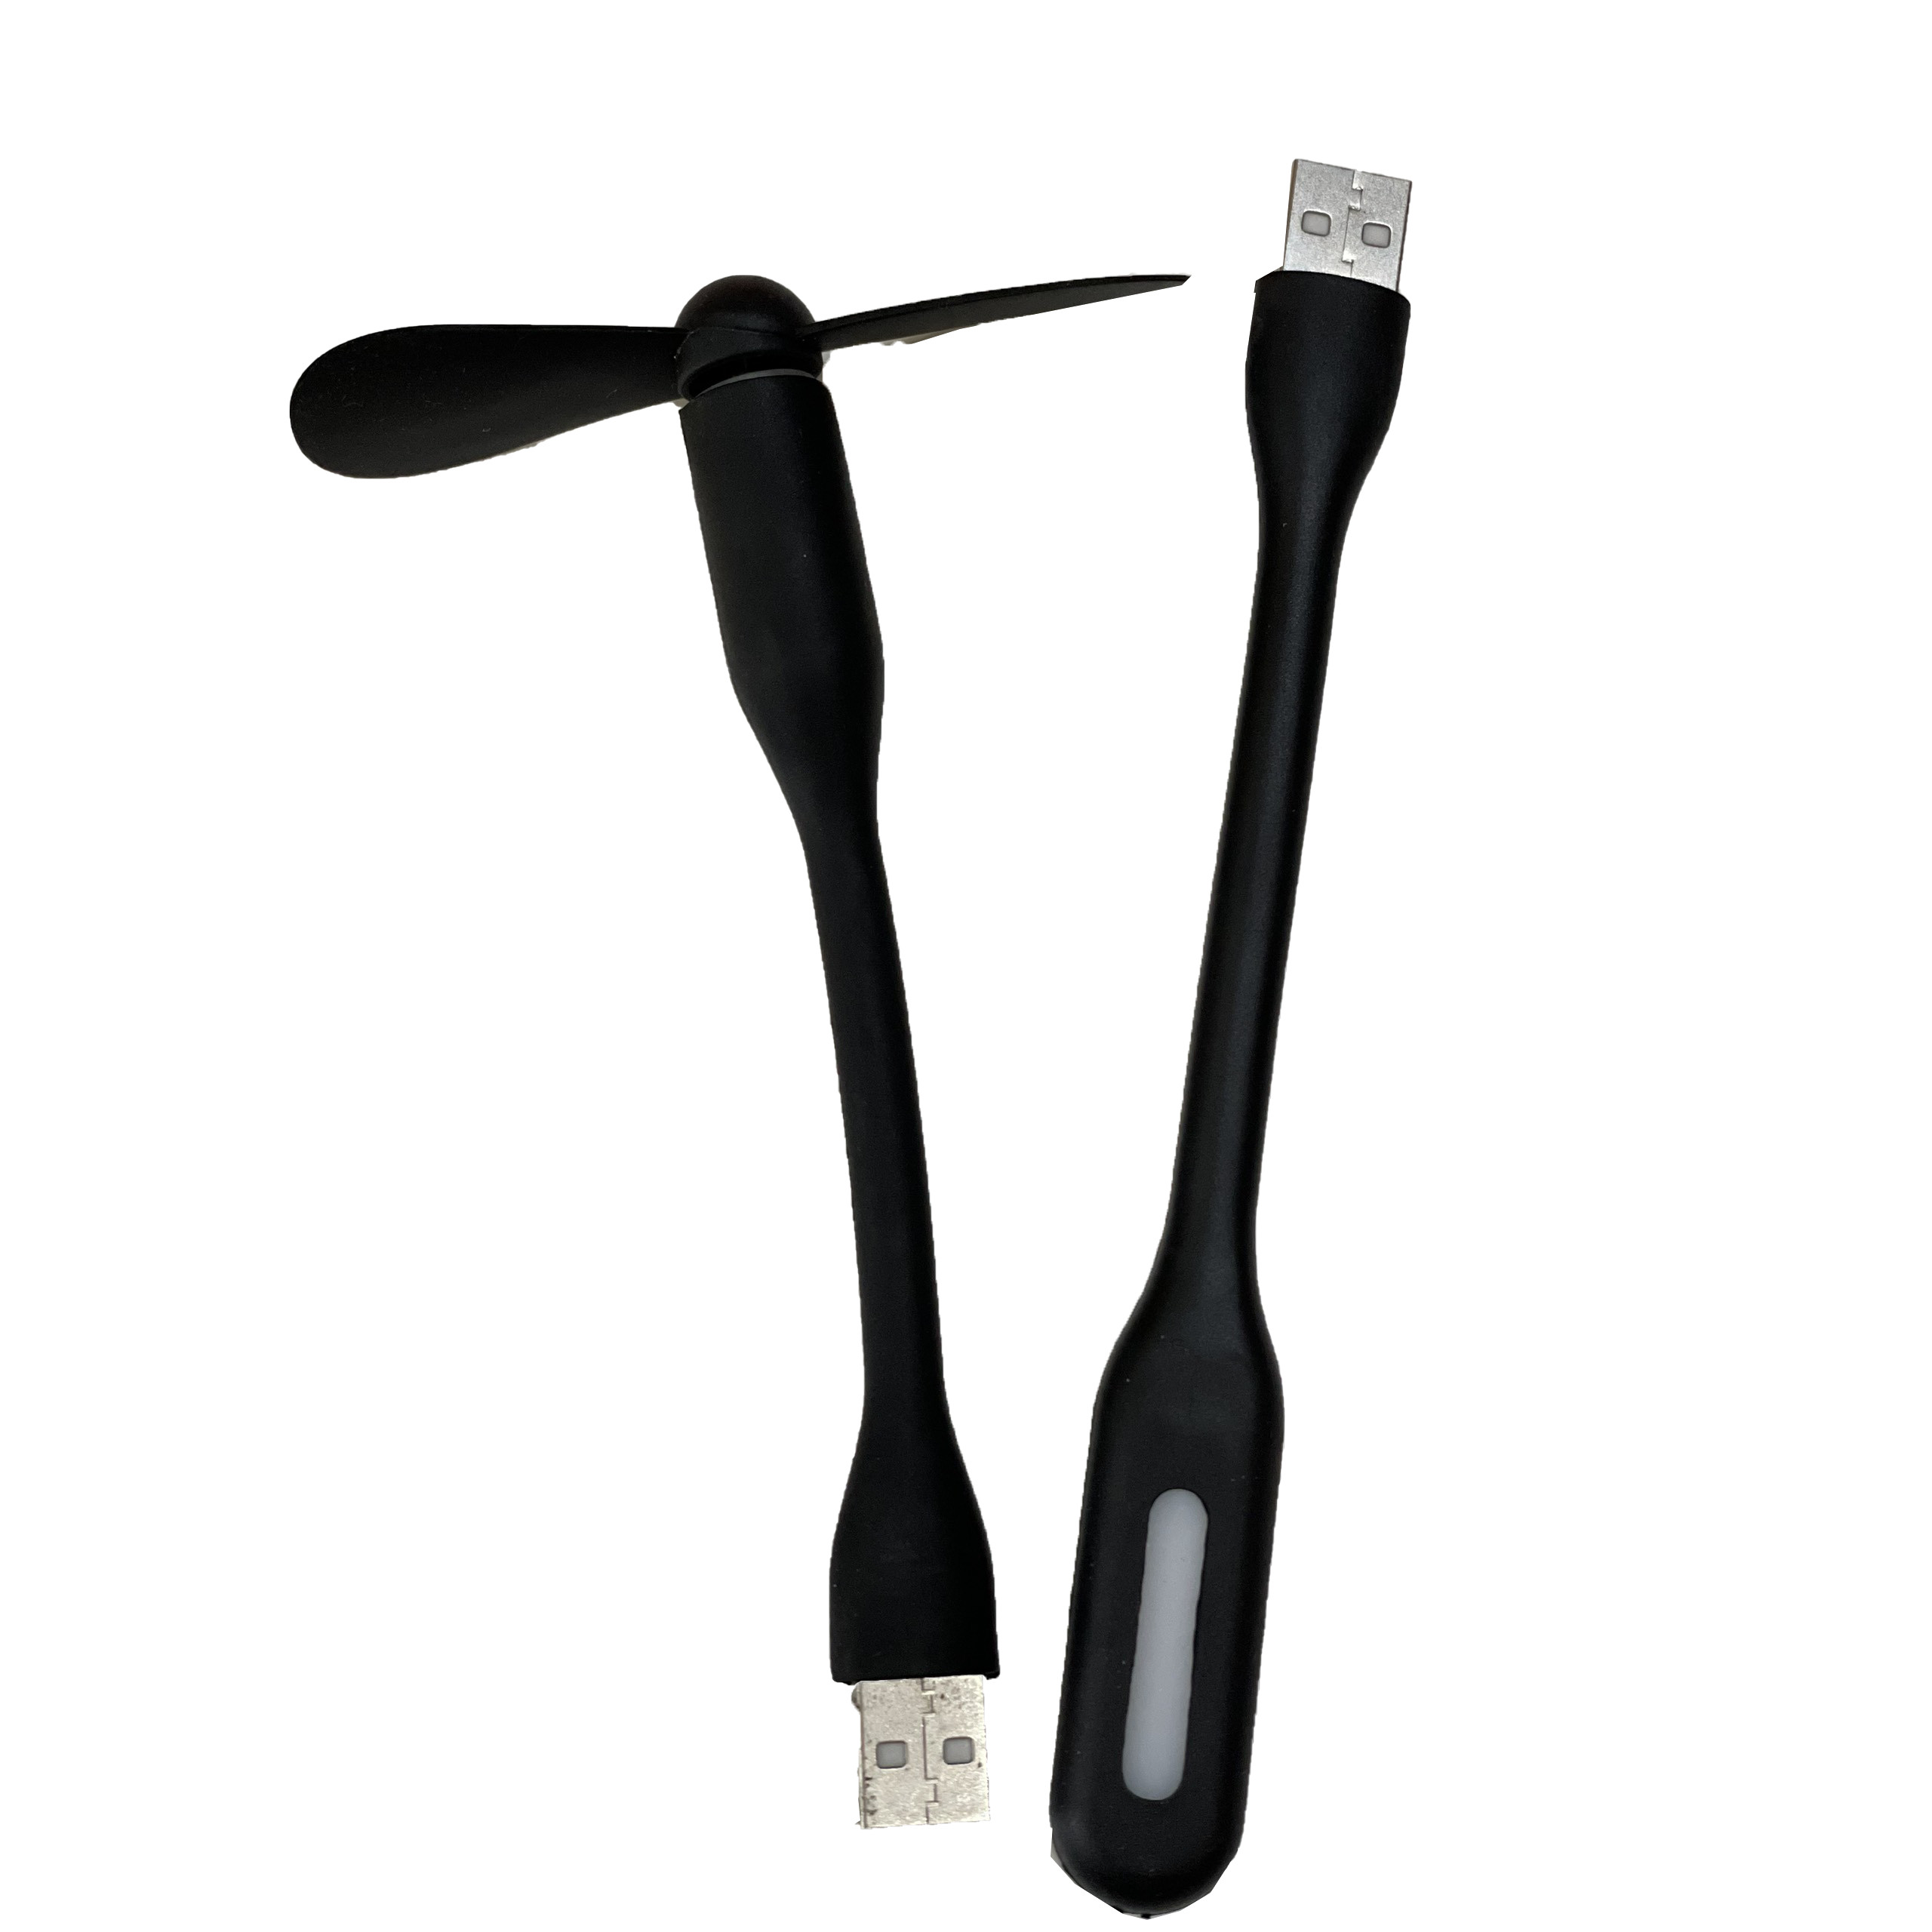 Đèn USB + Quạt USB mini có thể sử dụng bằng Laptop, sạc dự phòng, sạc điện thoại bảo hành...